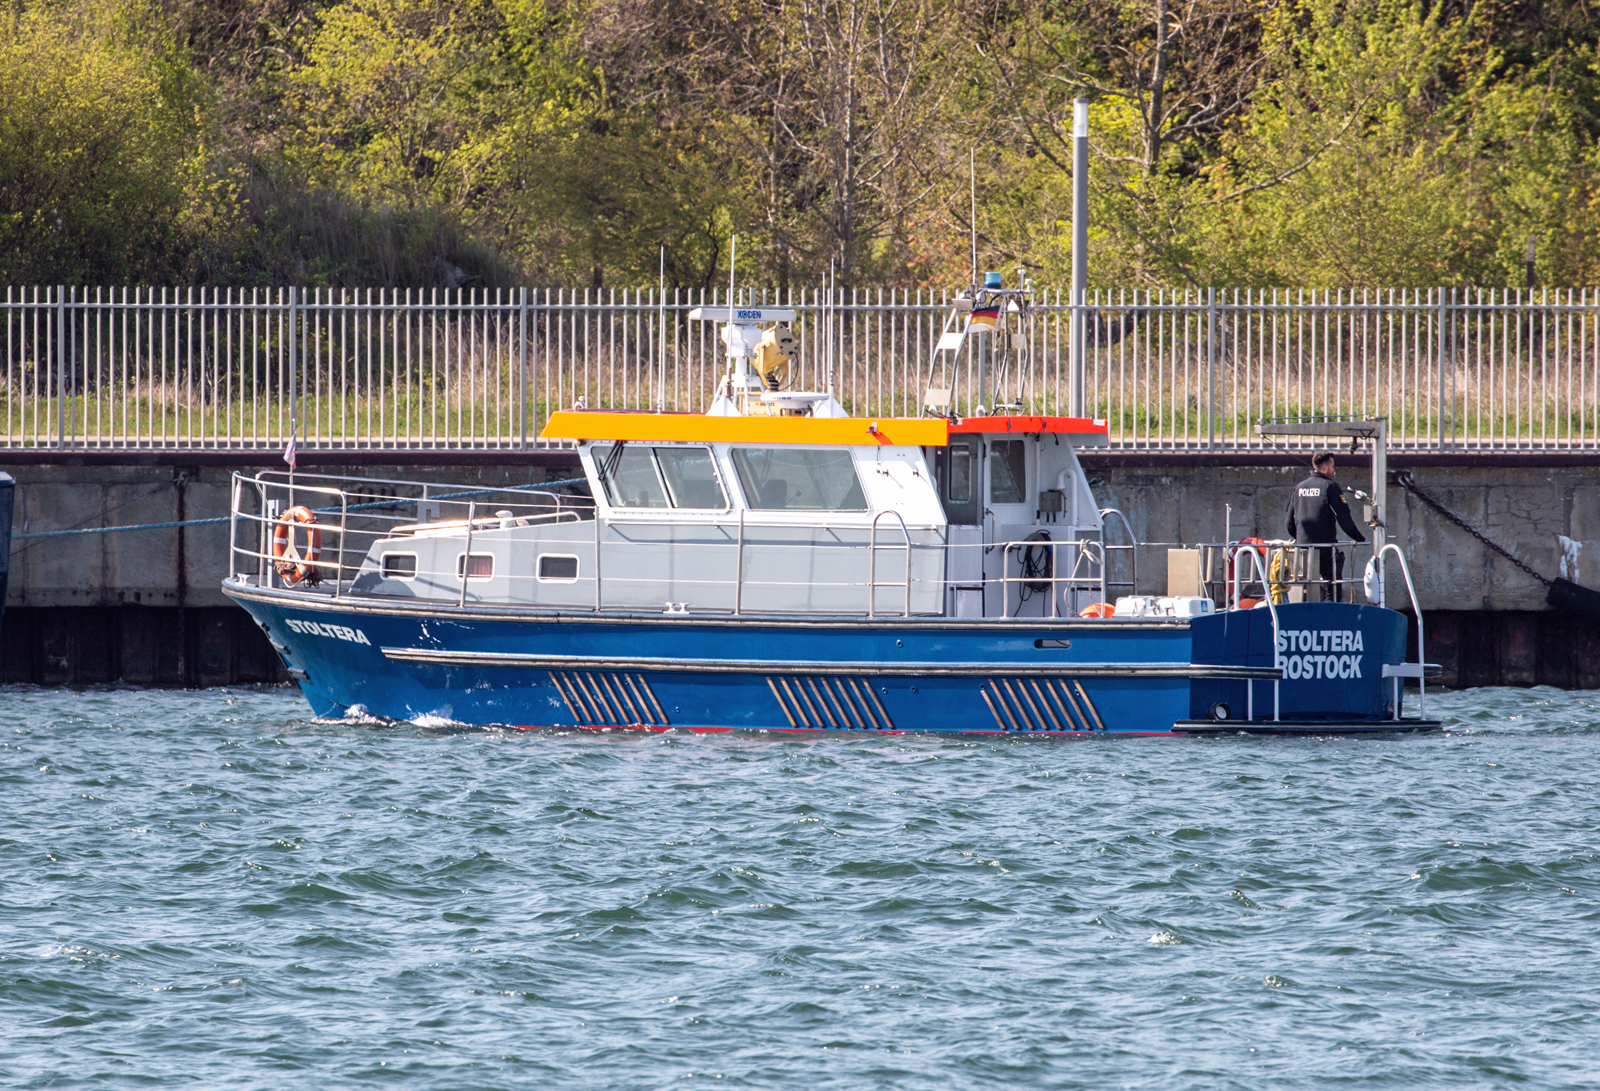  Polizeiboot STOLTERA der WSP im Sassnitzer Hafen. - 13.05.2023